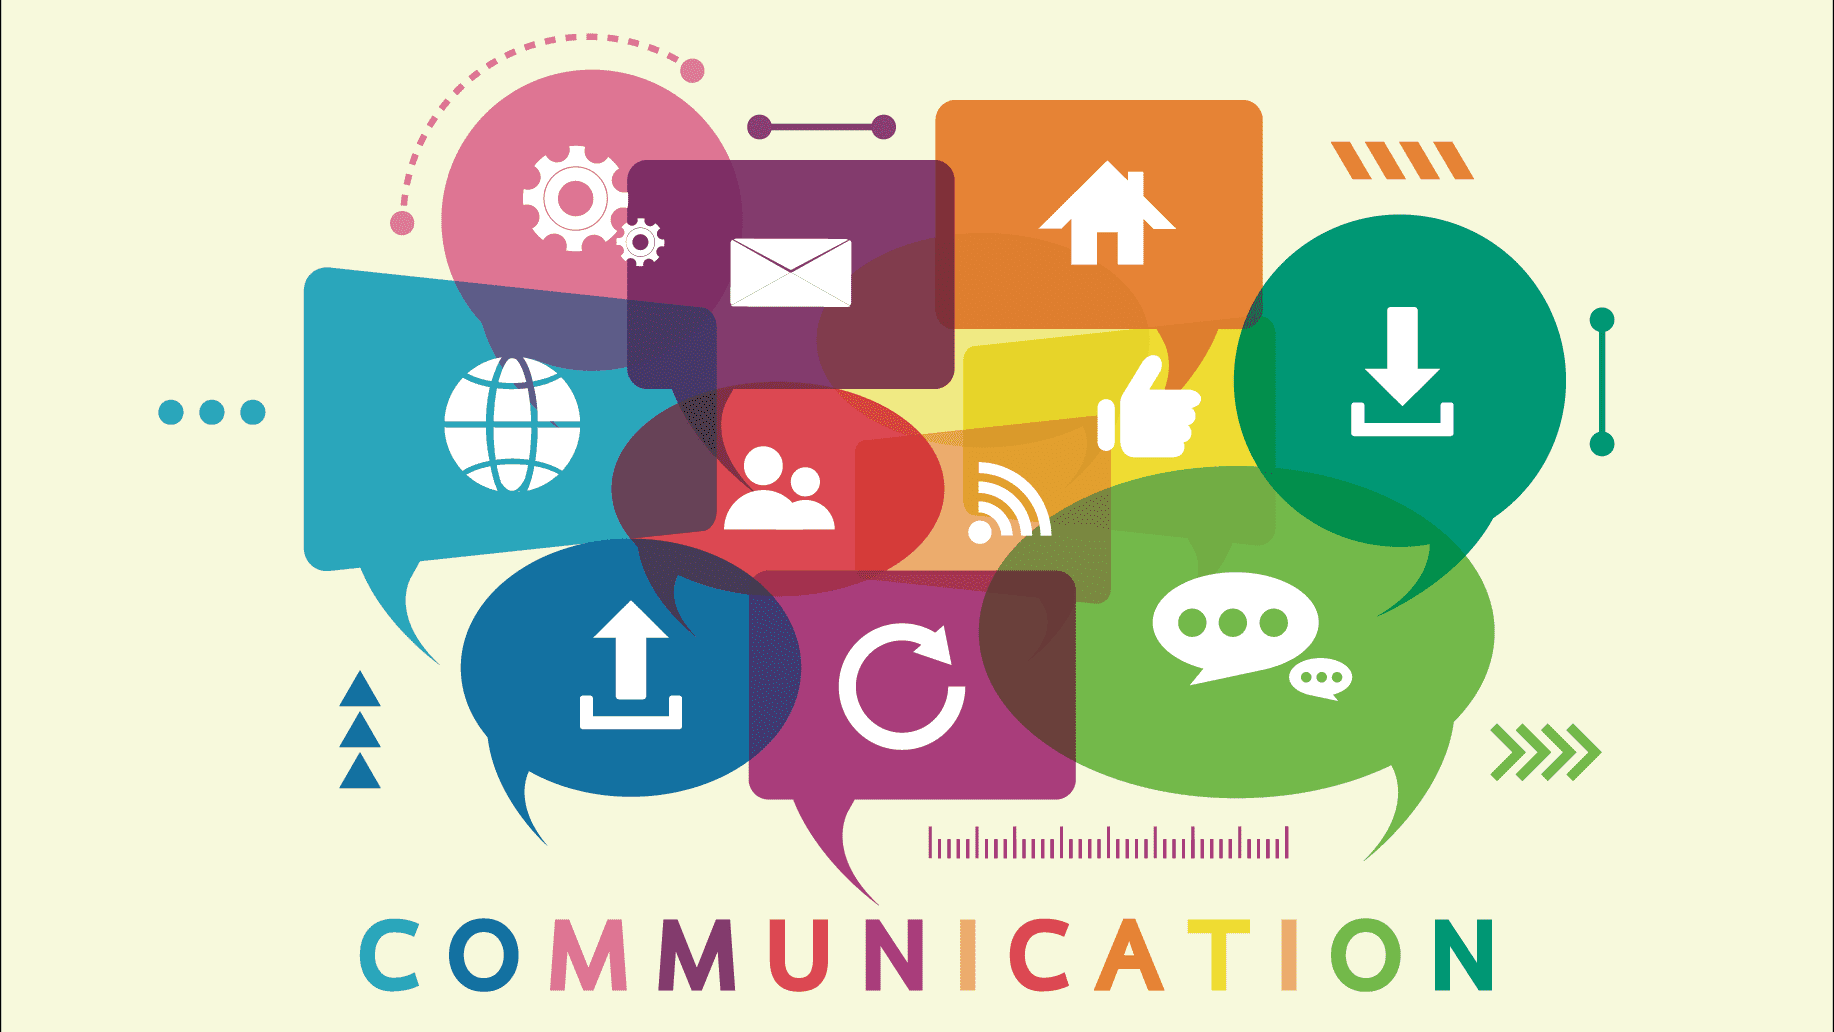 Effective Communication Guide [Part 1] - Core High-level Principles